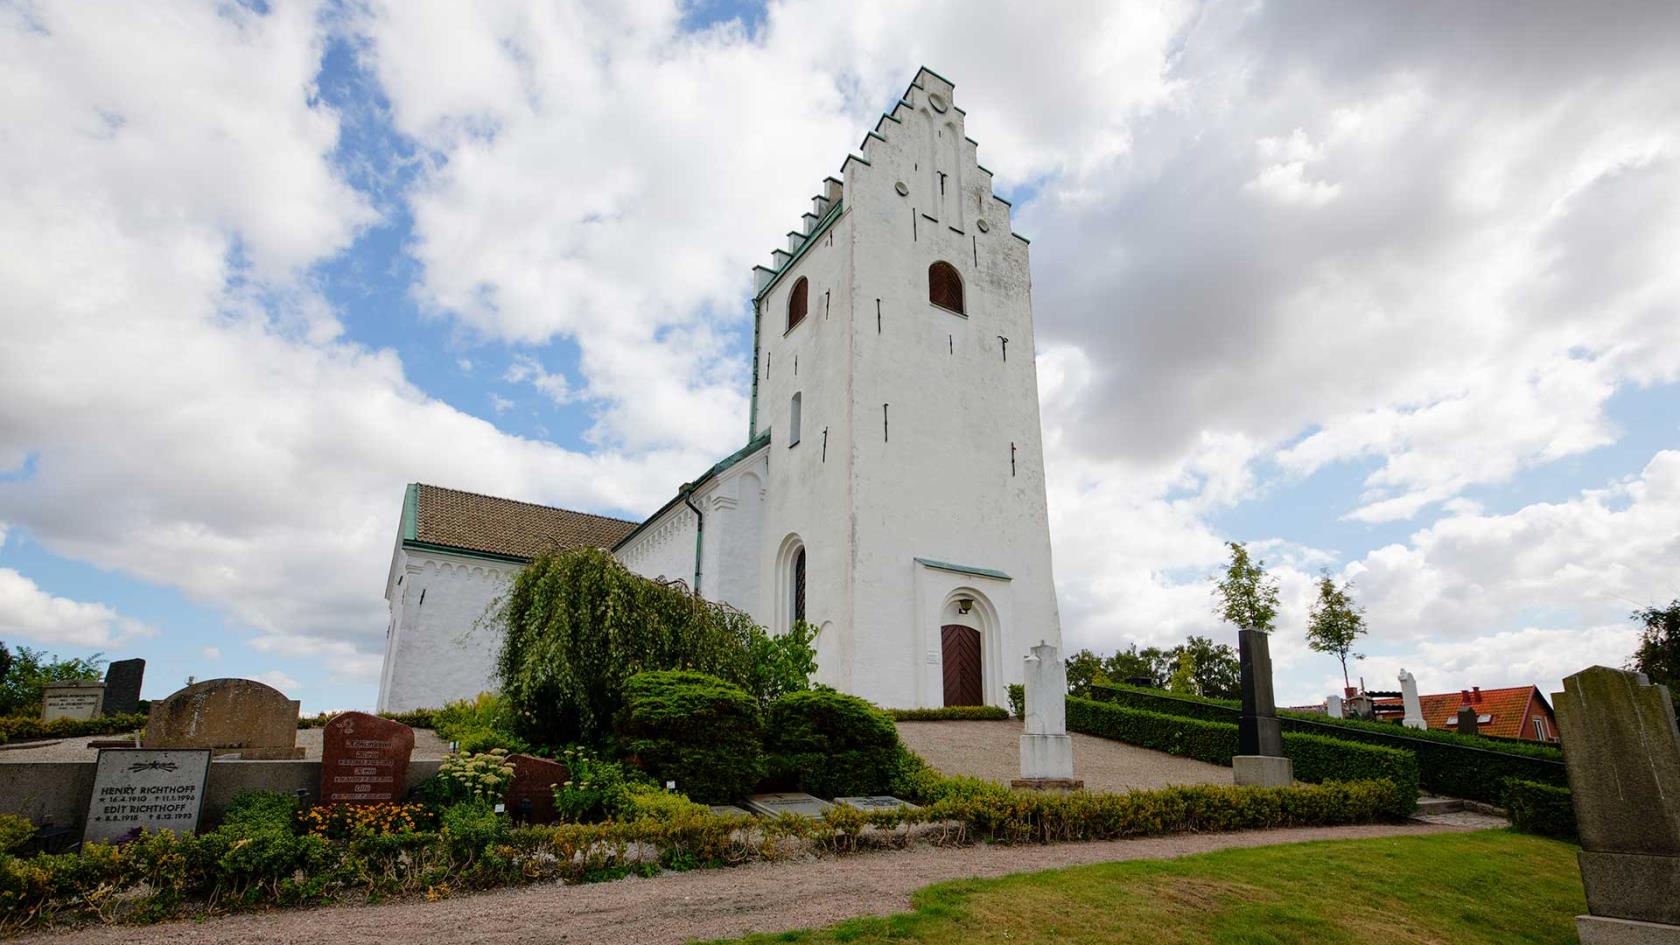 Vitkalkad kyrka med torn med trappstensgavel ligger uppe på en kulle. Runt om finns gravstenar, gräs och grusgångar.